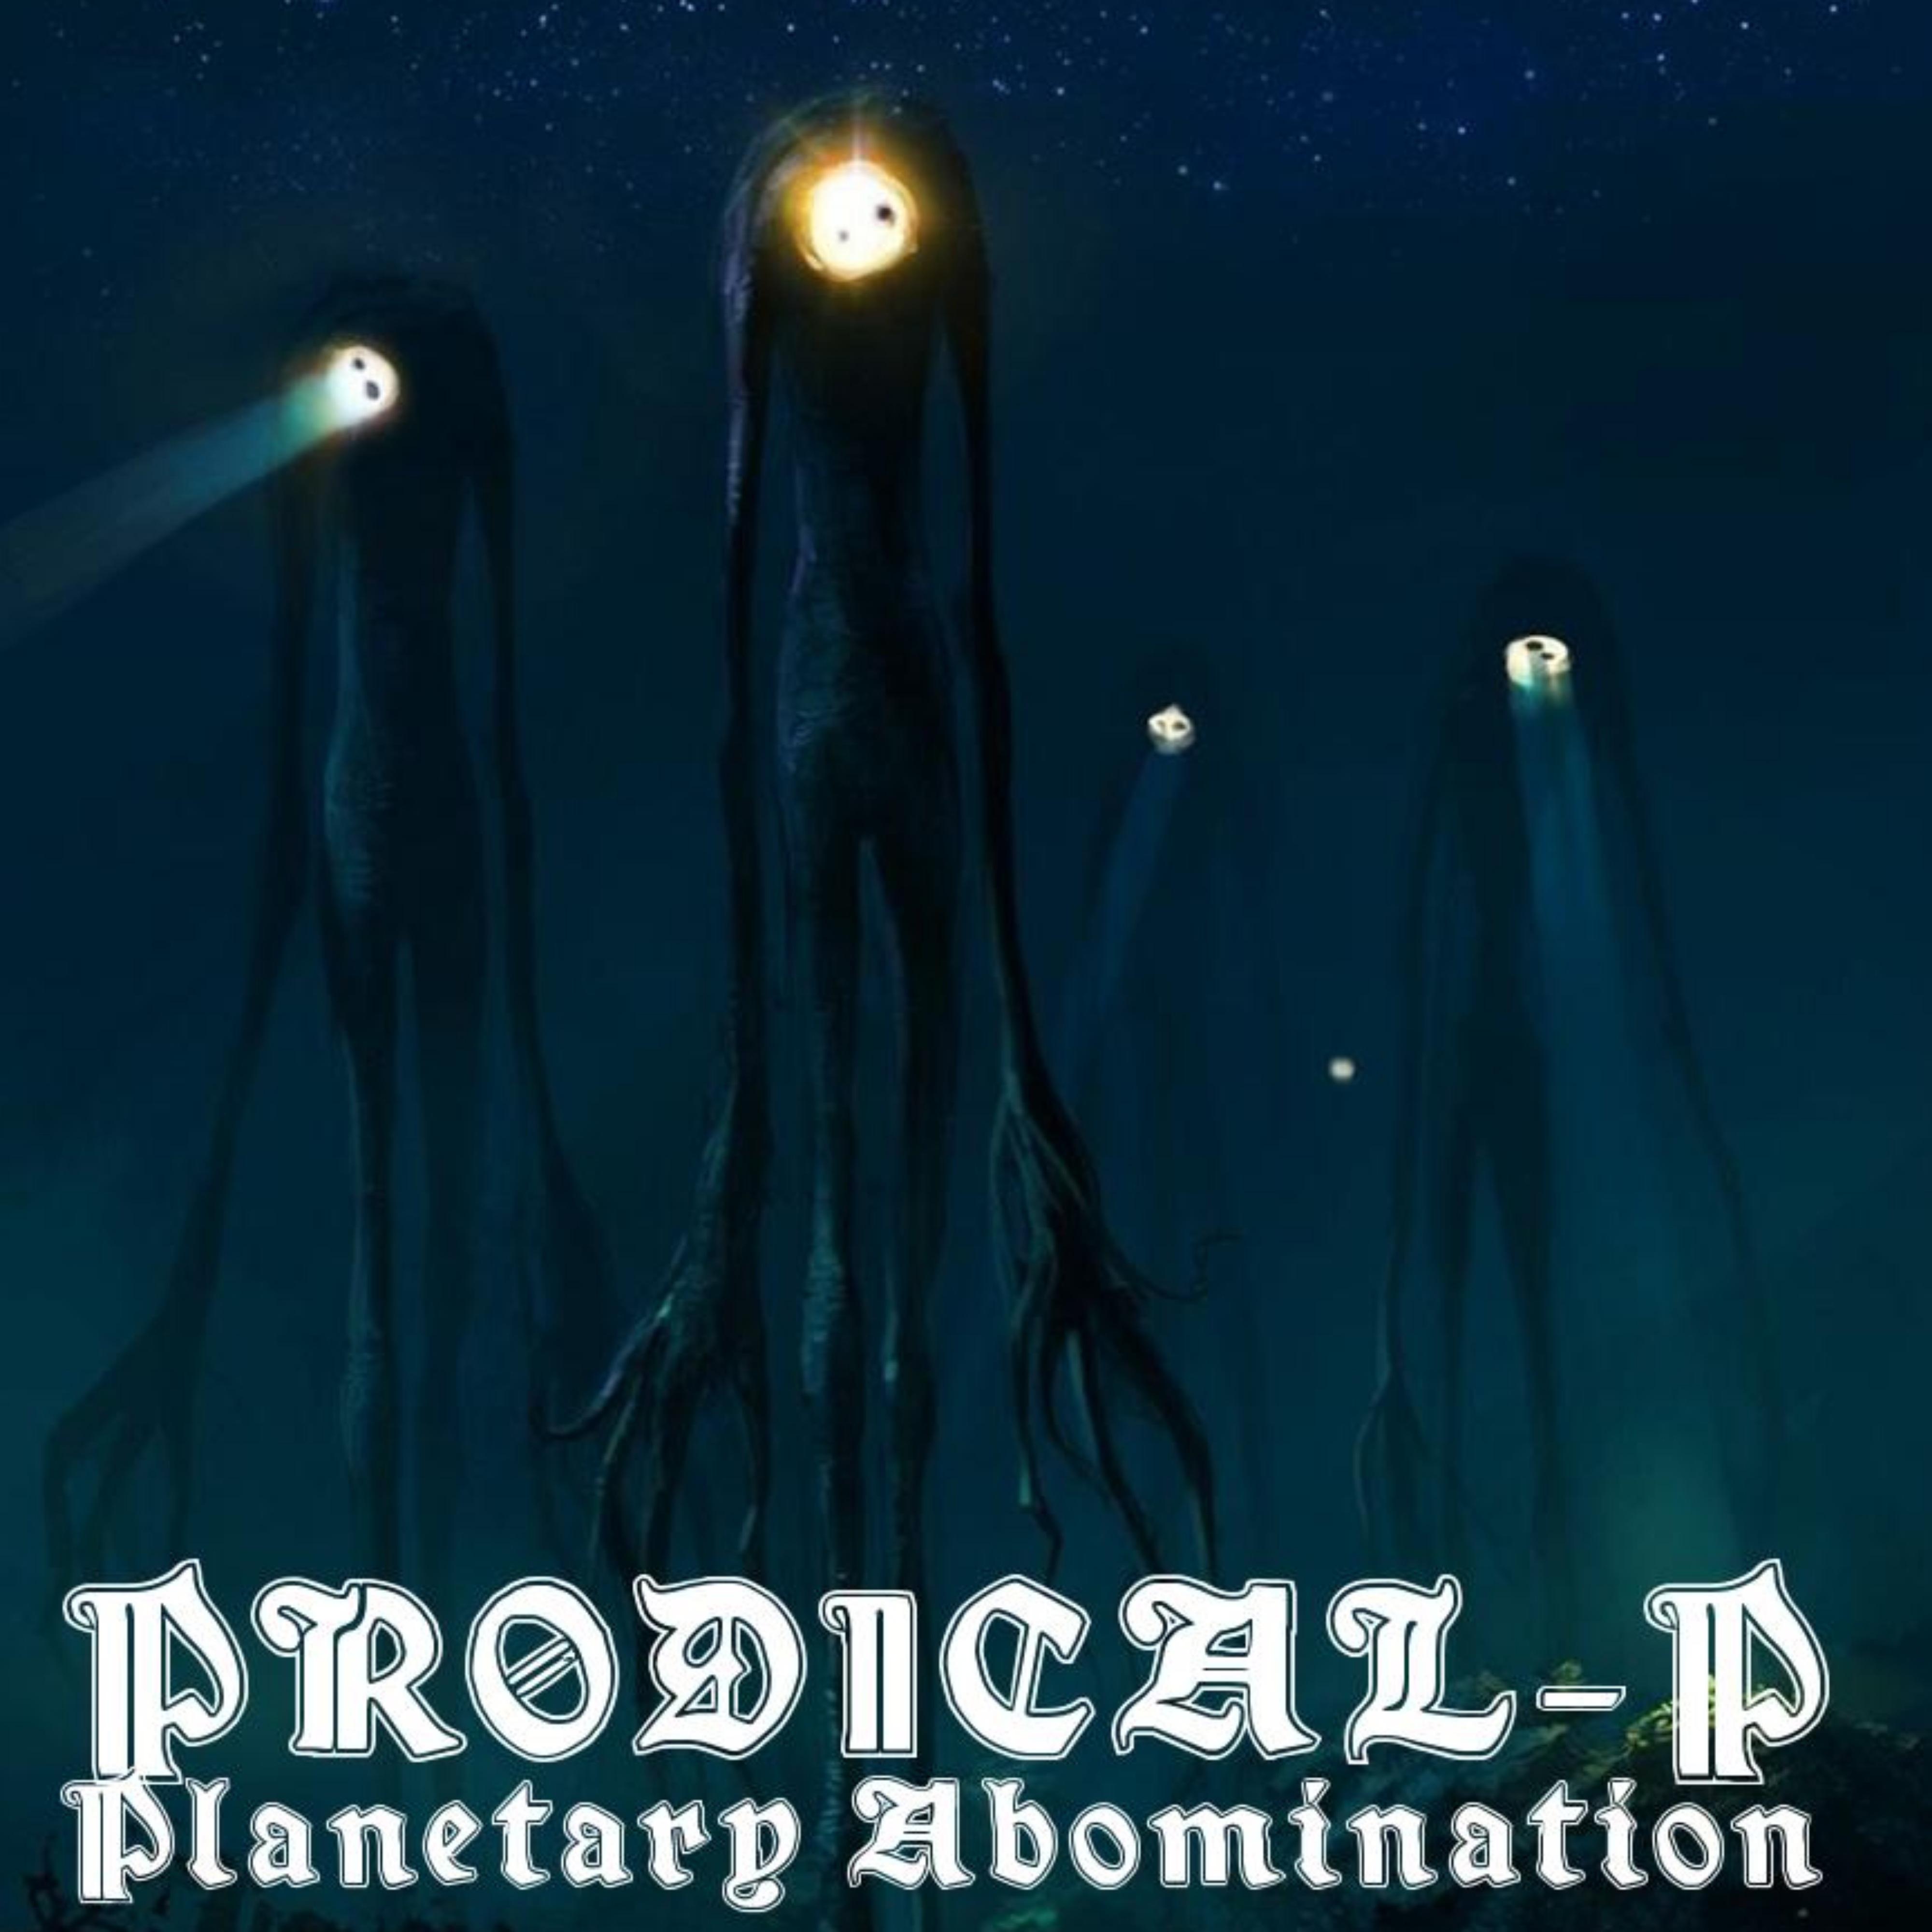 Prodical-P - Freeflow Abomination